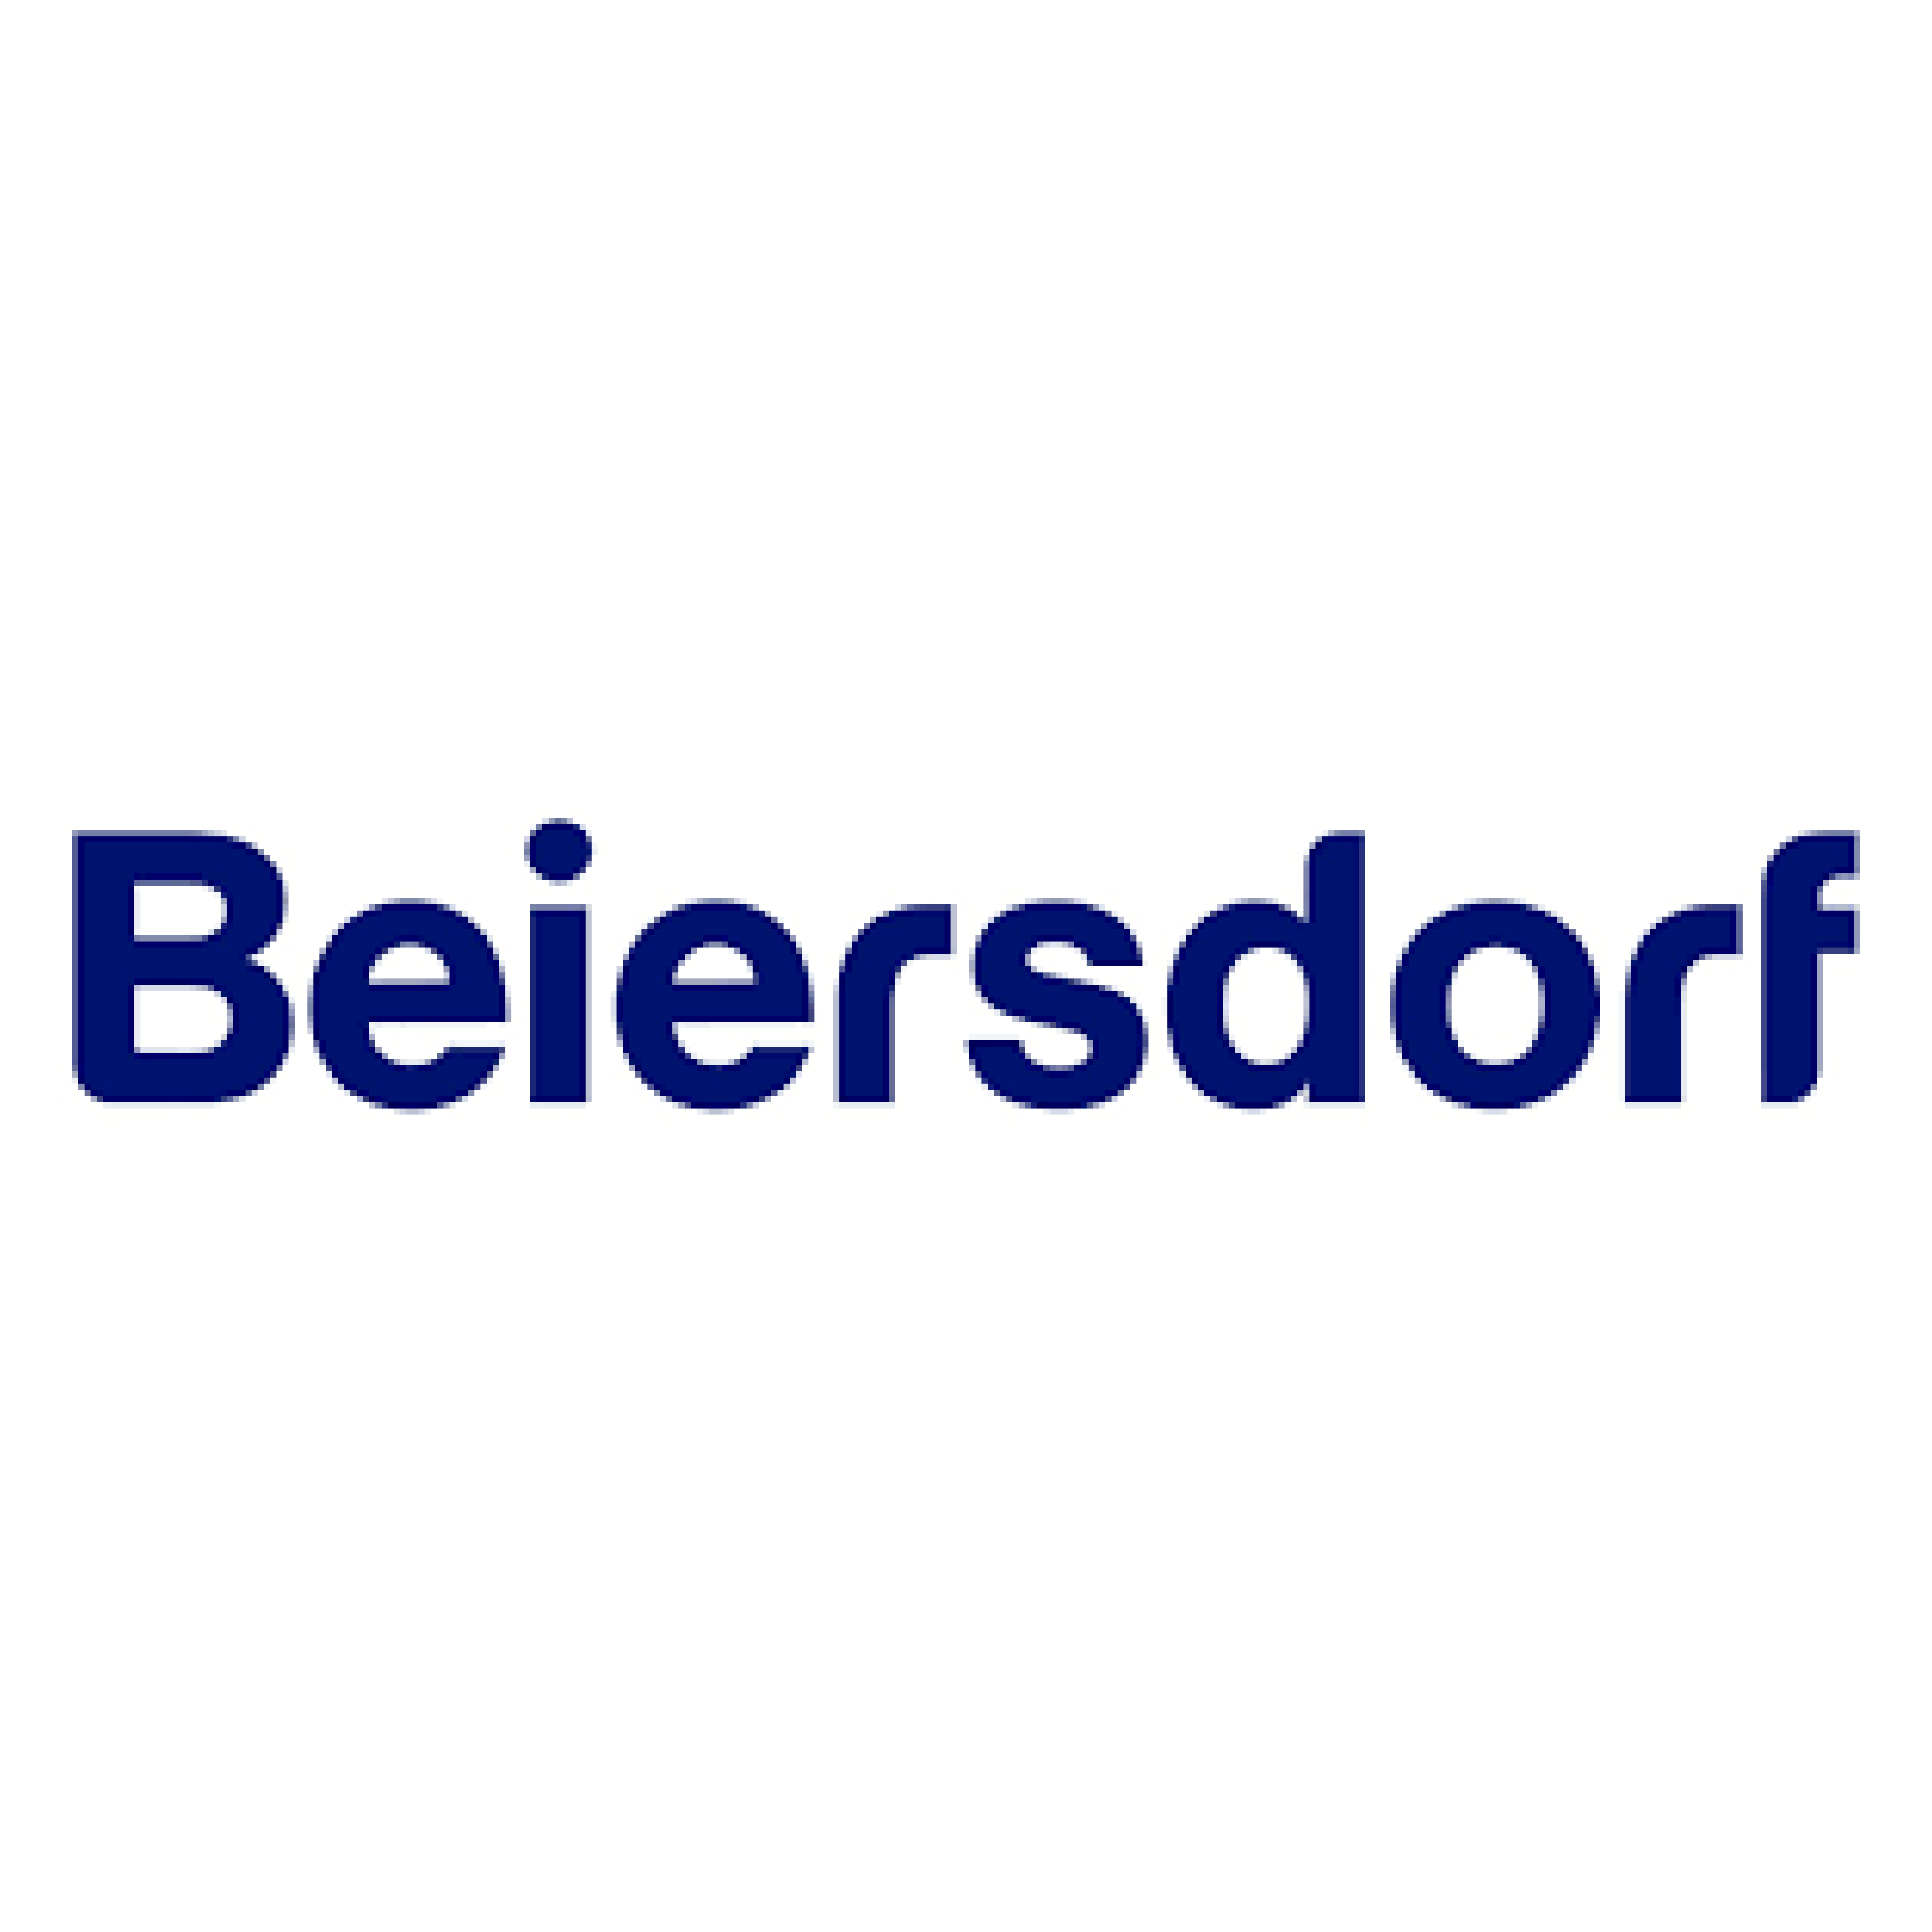 Beiersdorf_logo_4x4_Zeichenflache-1.png